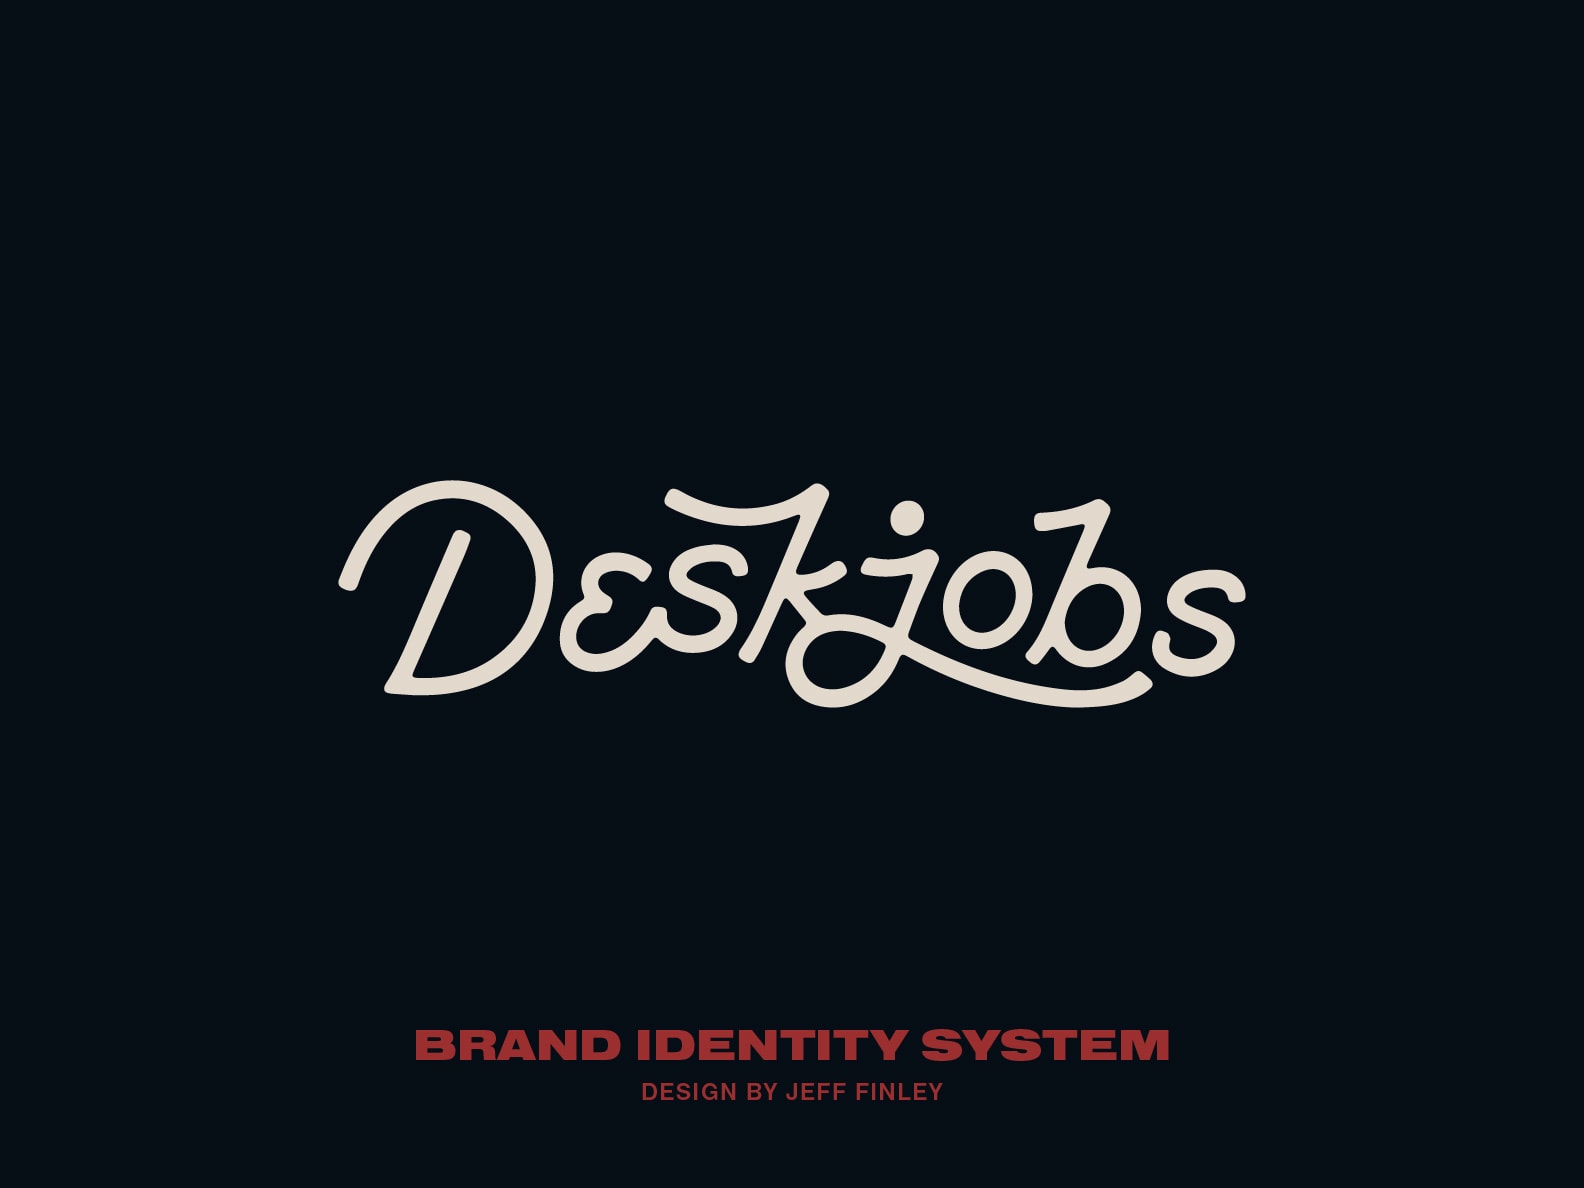 Deskjobs Brand Identity